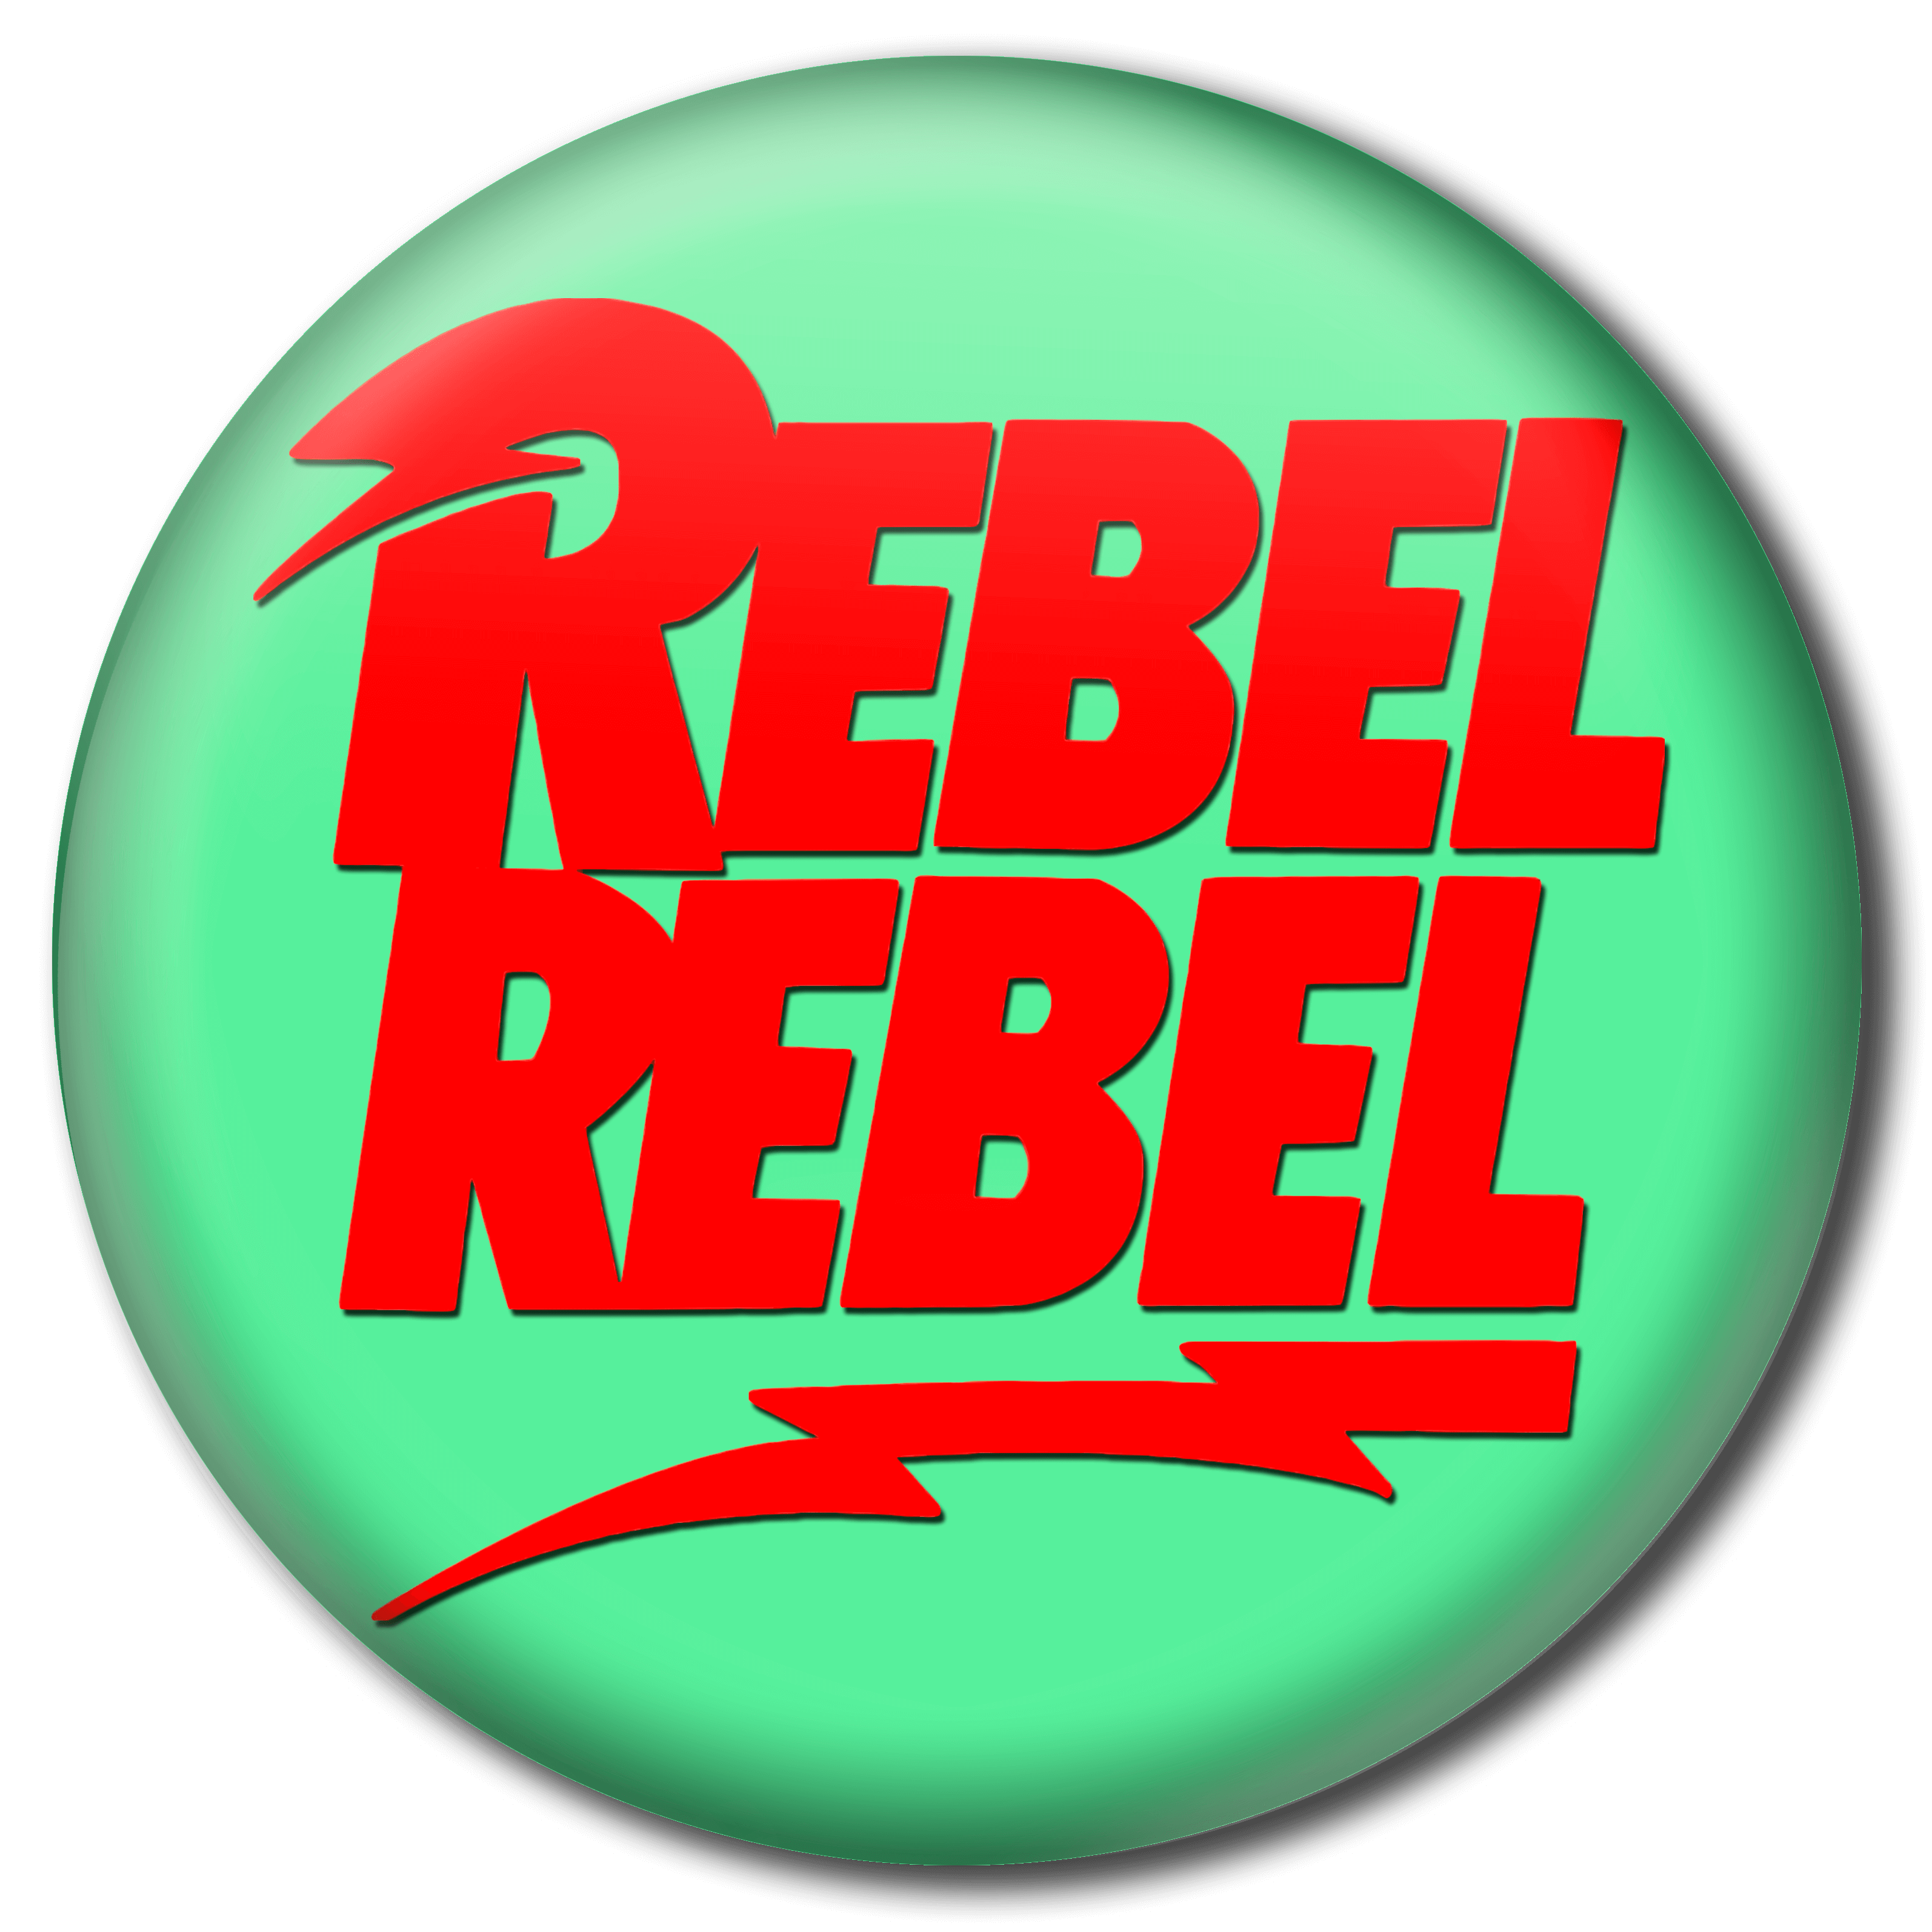 Rebel rebel